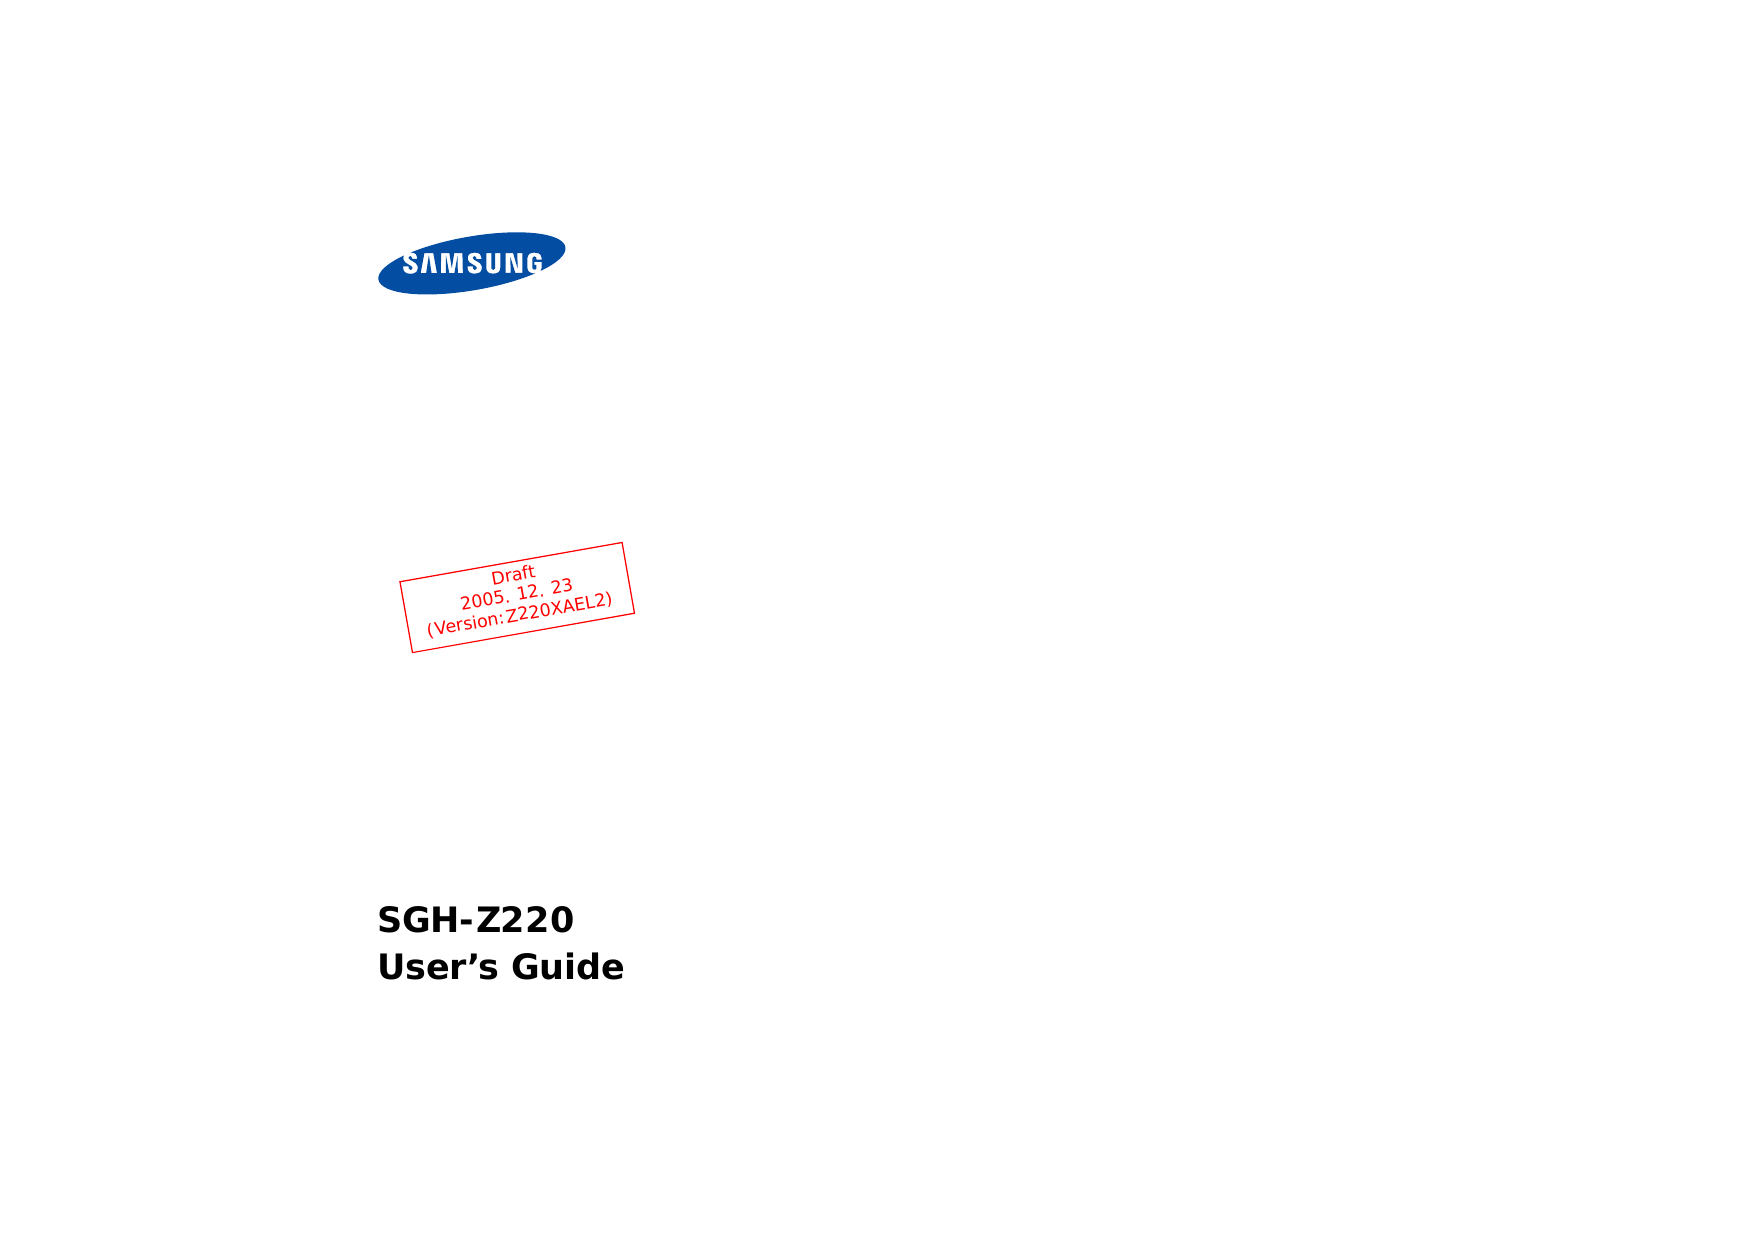 SGH-Z220User’s GuideDraft 2005. 12. 23(Version:Z220XAEL2)